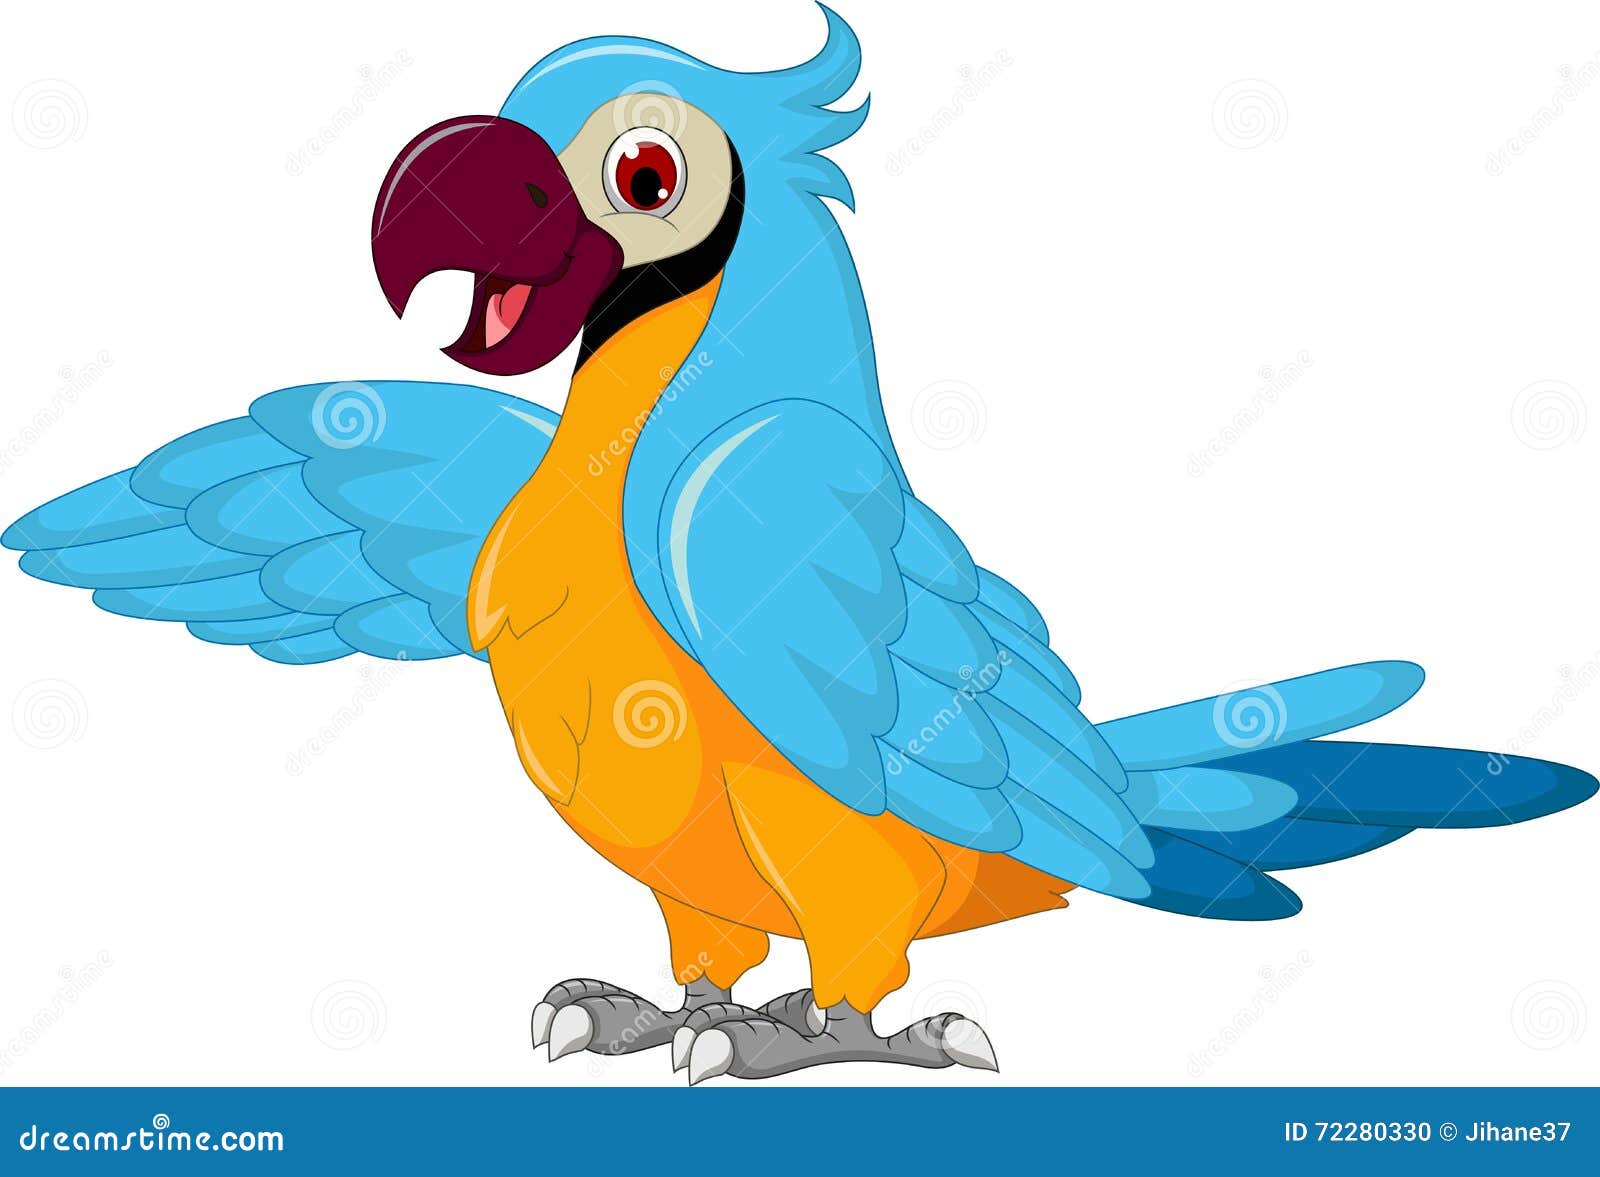 Cute parrot cartoon posing stock illustration. Illustration of ...